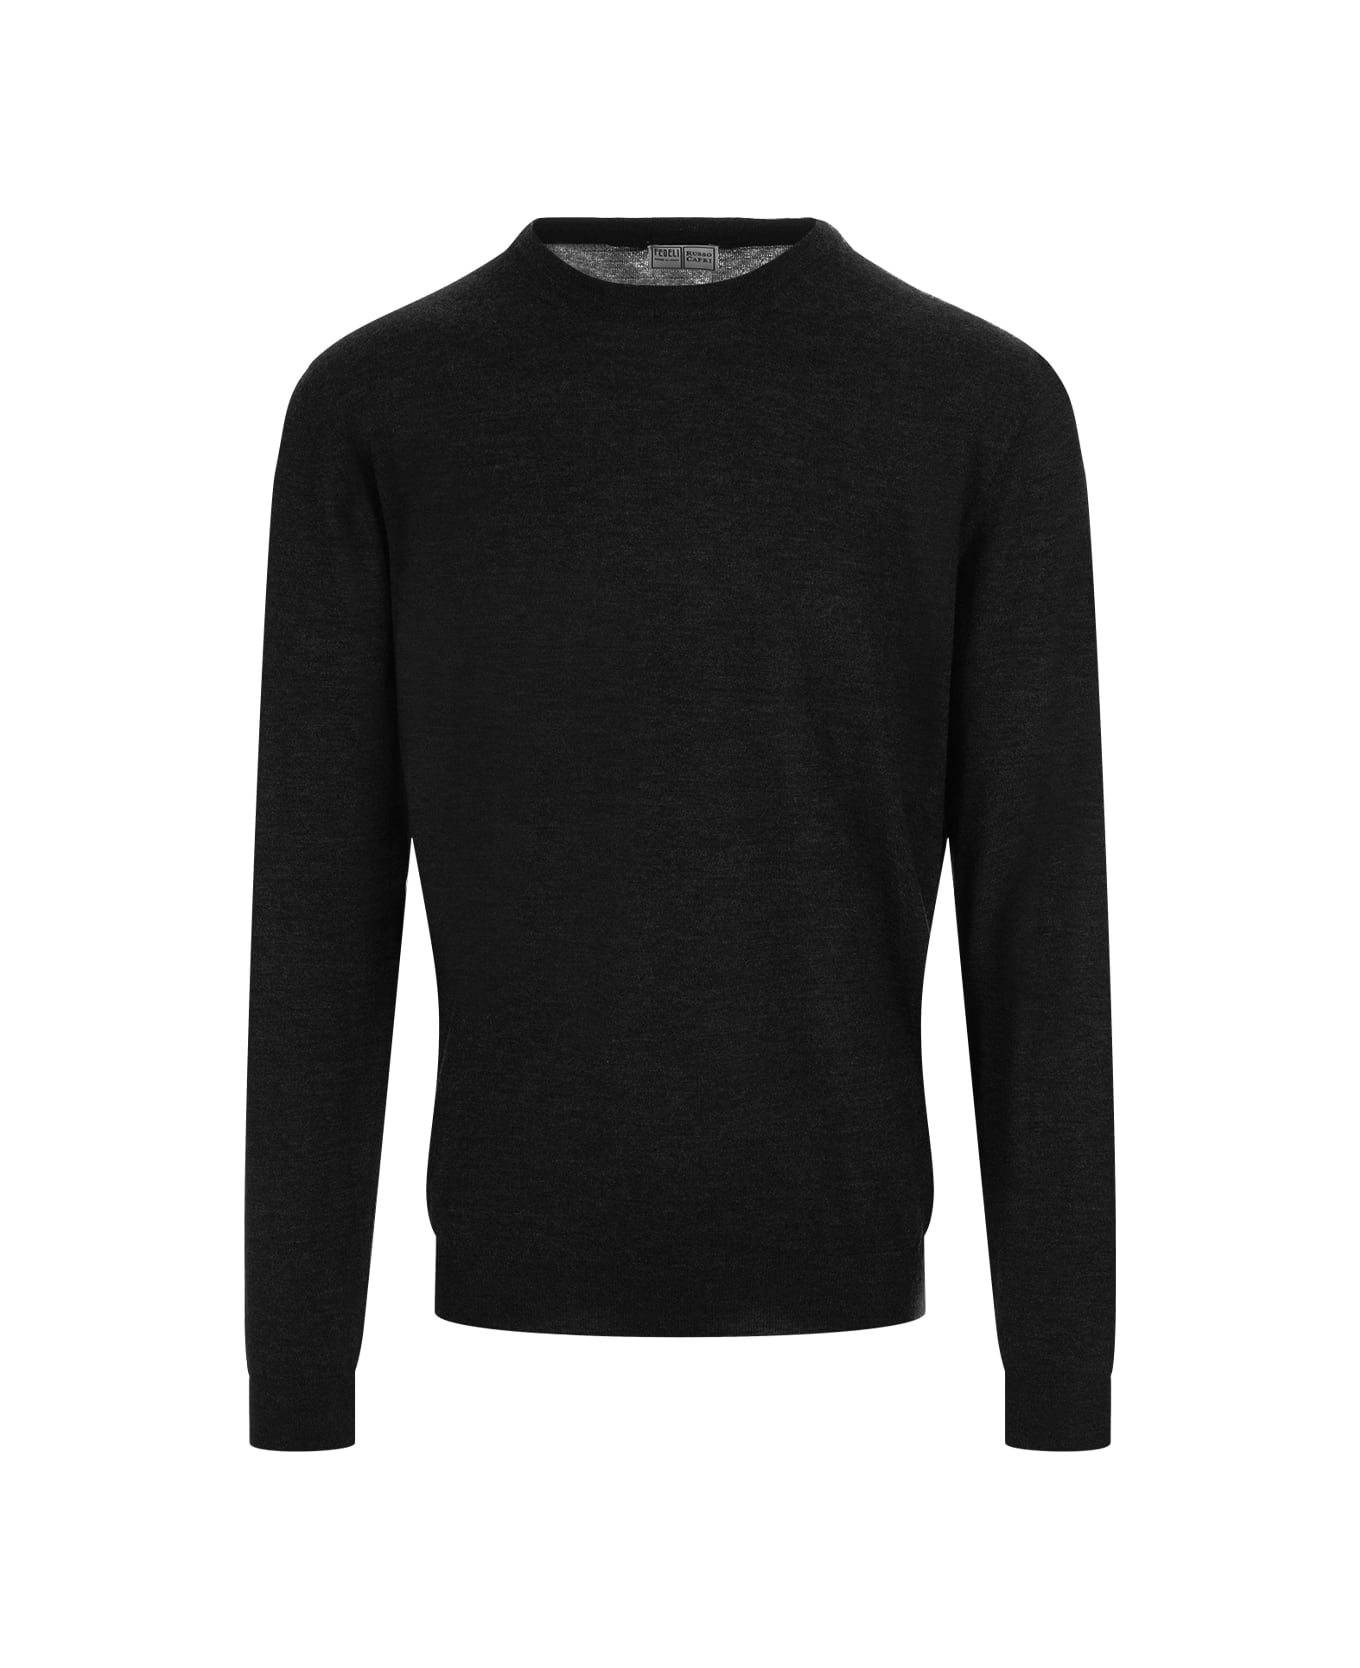 Fedeli Black Cashmere Sweater - Black ニットウェア